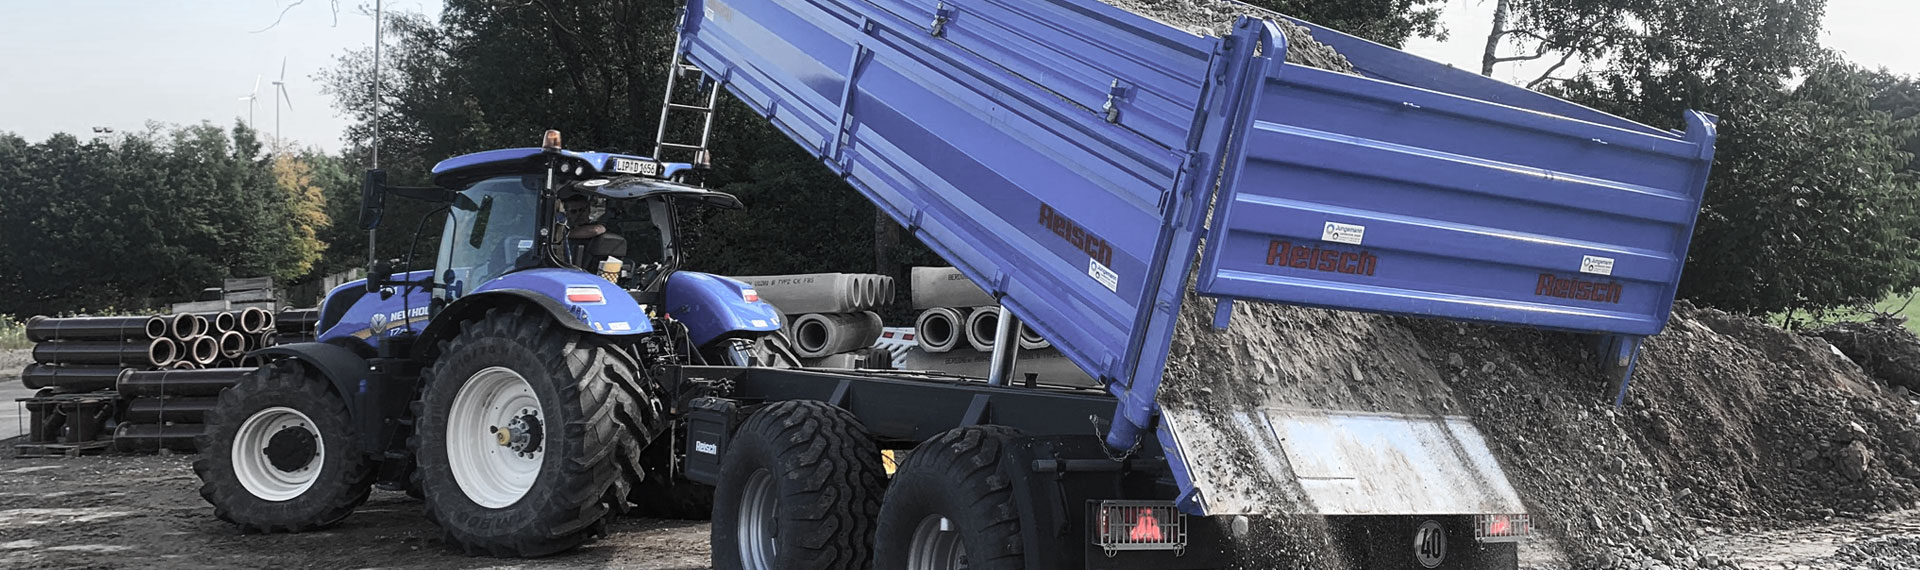 Un camion ribaltabile blu con cassone realizzato in lamiera d'acciaio Hardox® che scarica un carico di rocce.